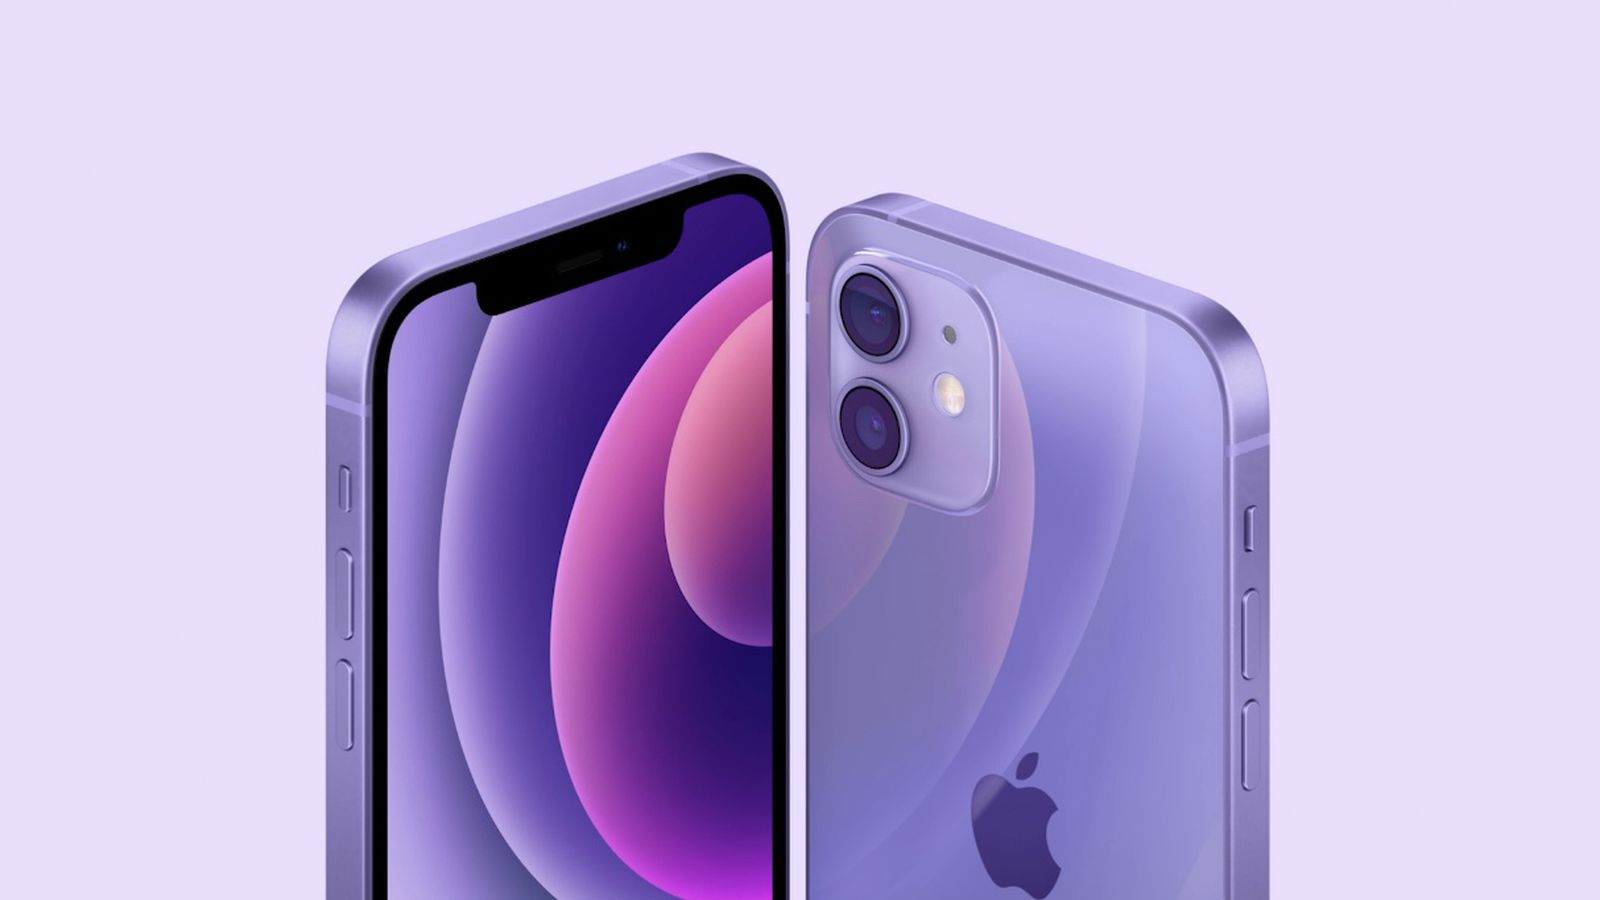 프랑스 규제 당국이 승인한 iPhone 12 방사선 수치 수정을 위한 Apple iOS 업데이트